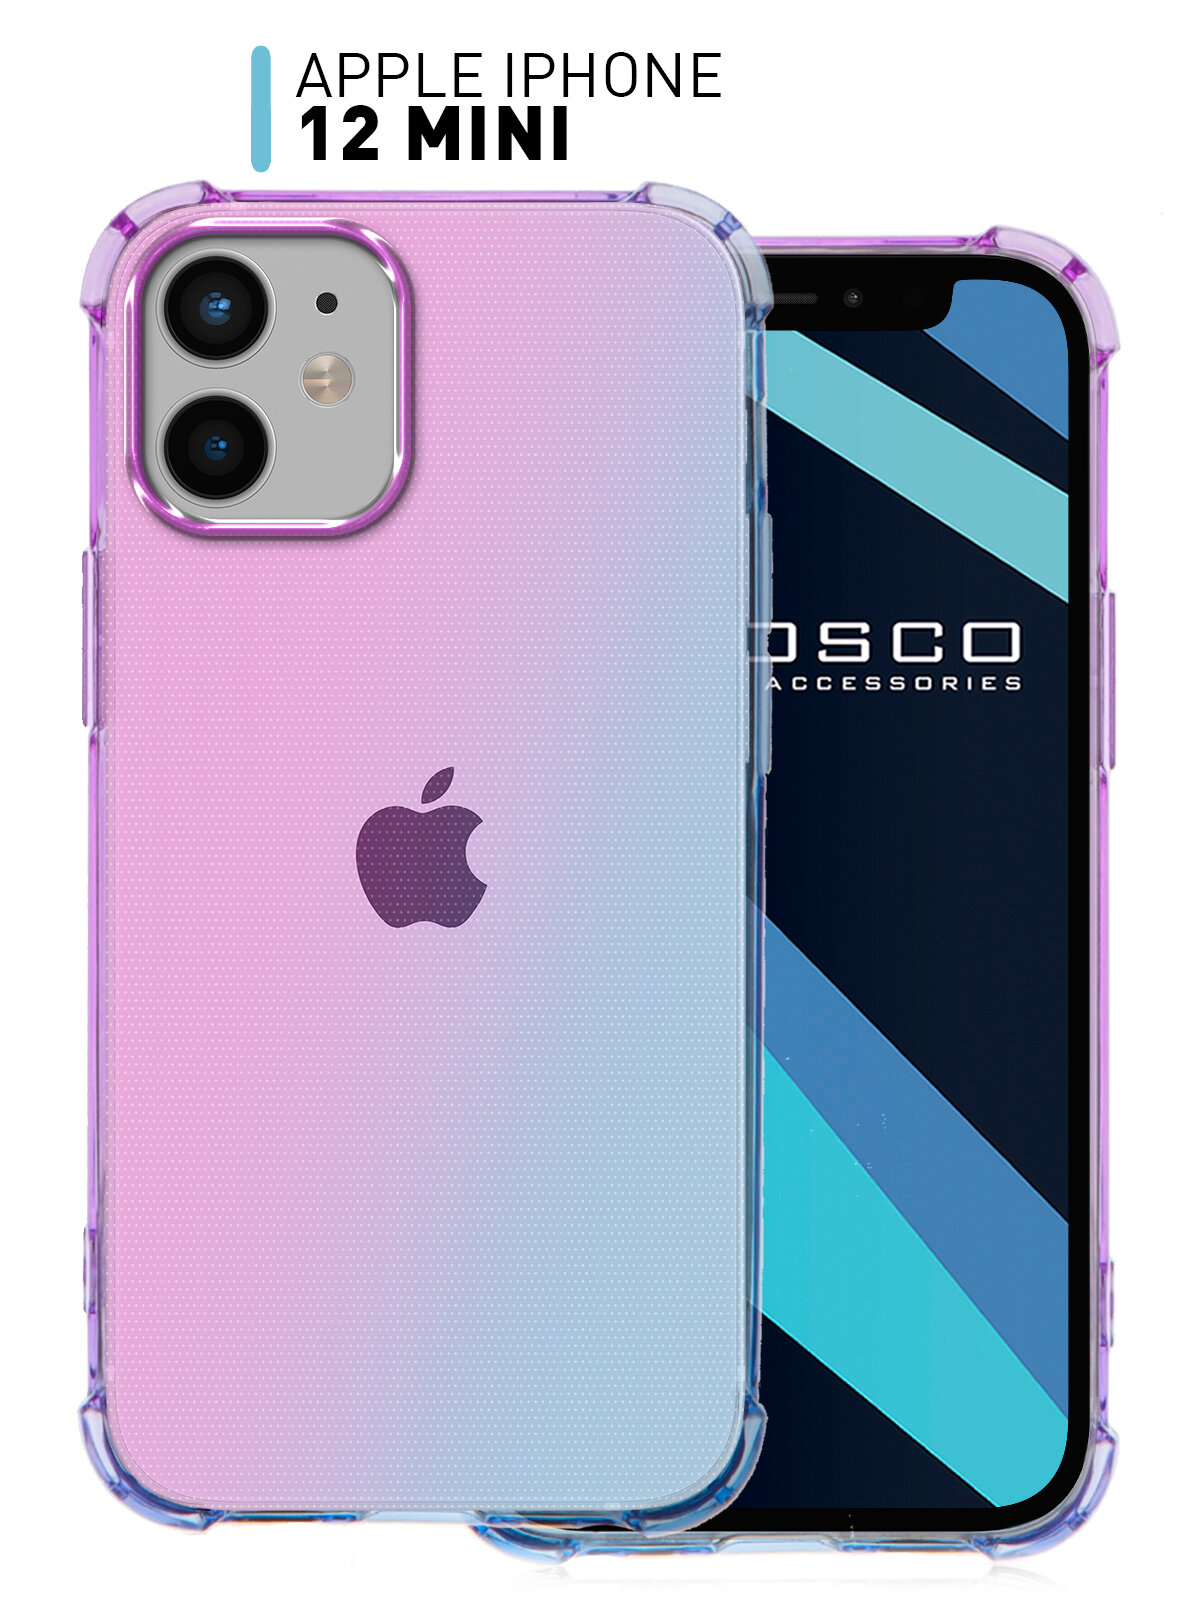 Противоударный чехол для Apple iPhone 12 mini (Эпл Айфон 12 мини) усиленный с бортиком (защитой) камер прозрачный силиконовый сиренево-голубой ROSCO